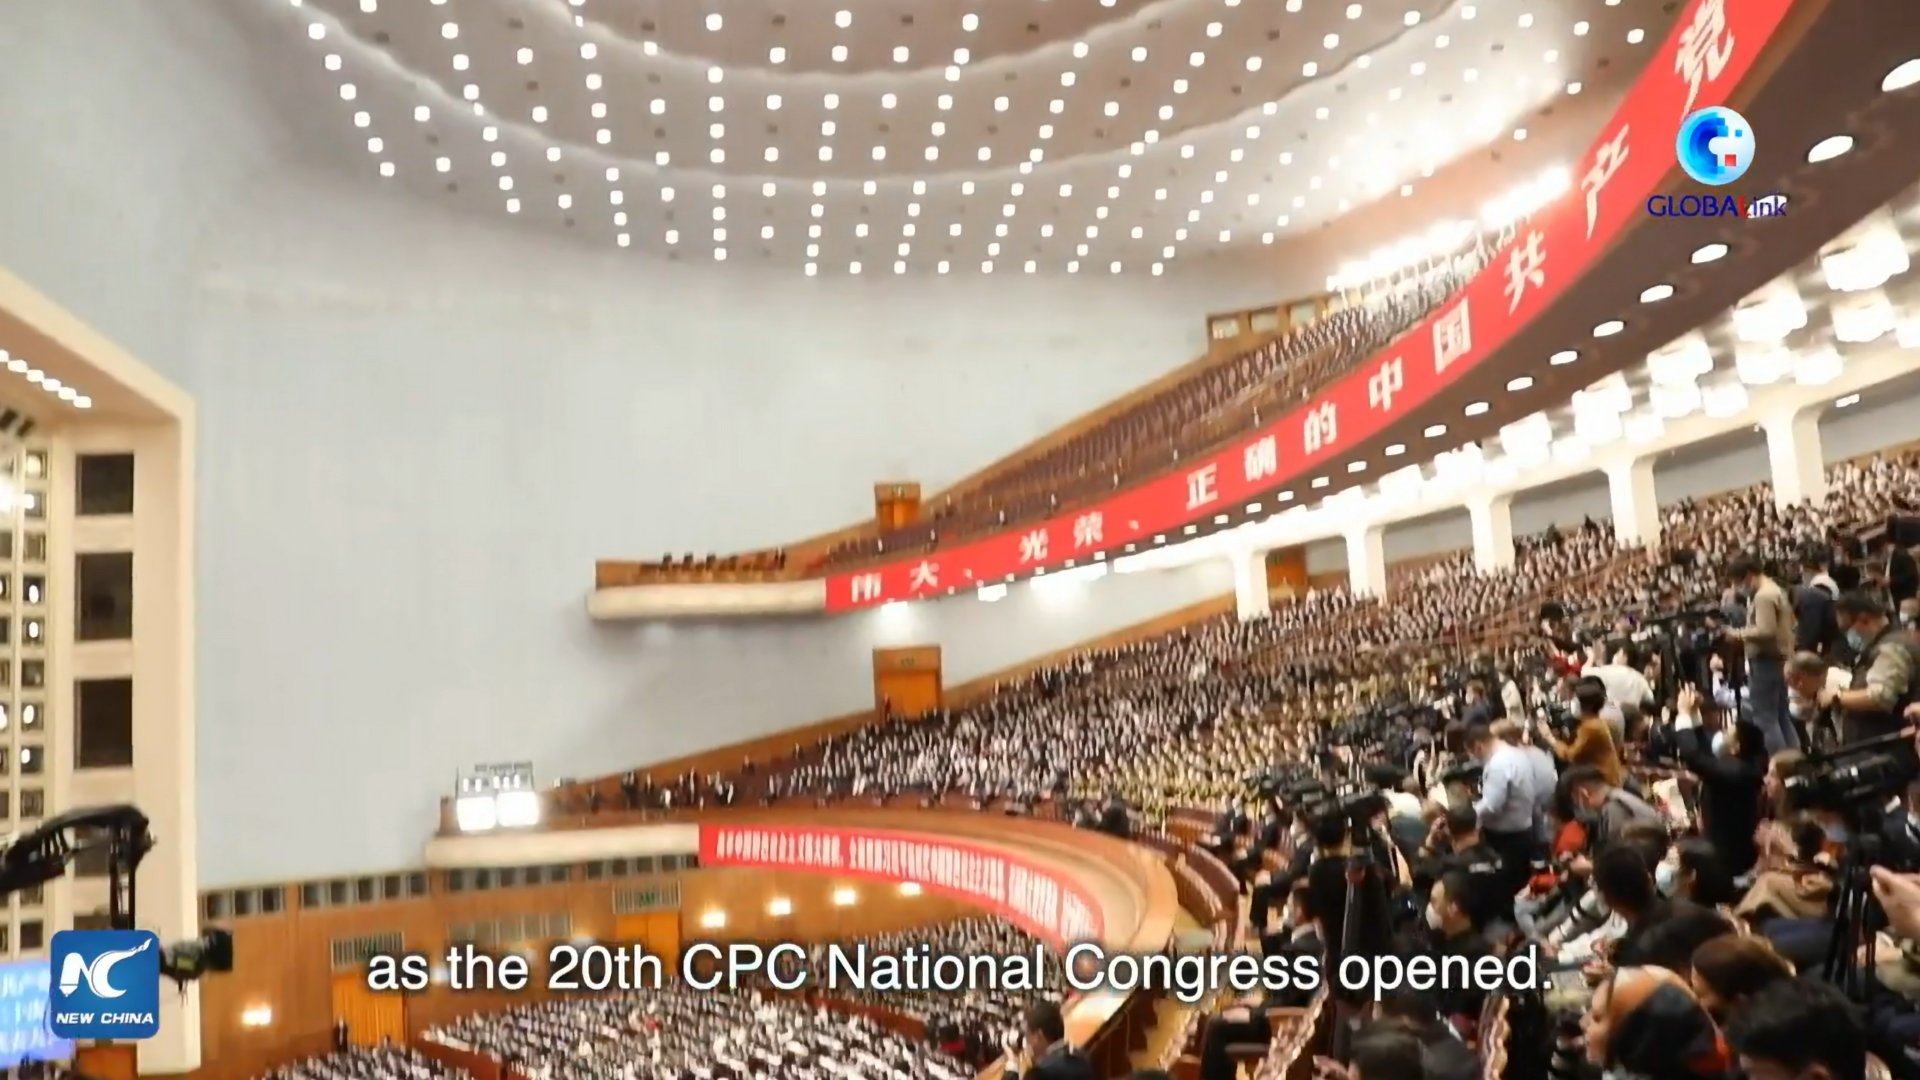 Kongresszust tart a Kínai Kommunista Párt. Mit jelent ez ránk nézve?